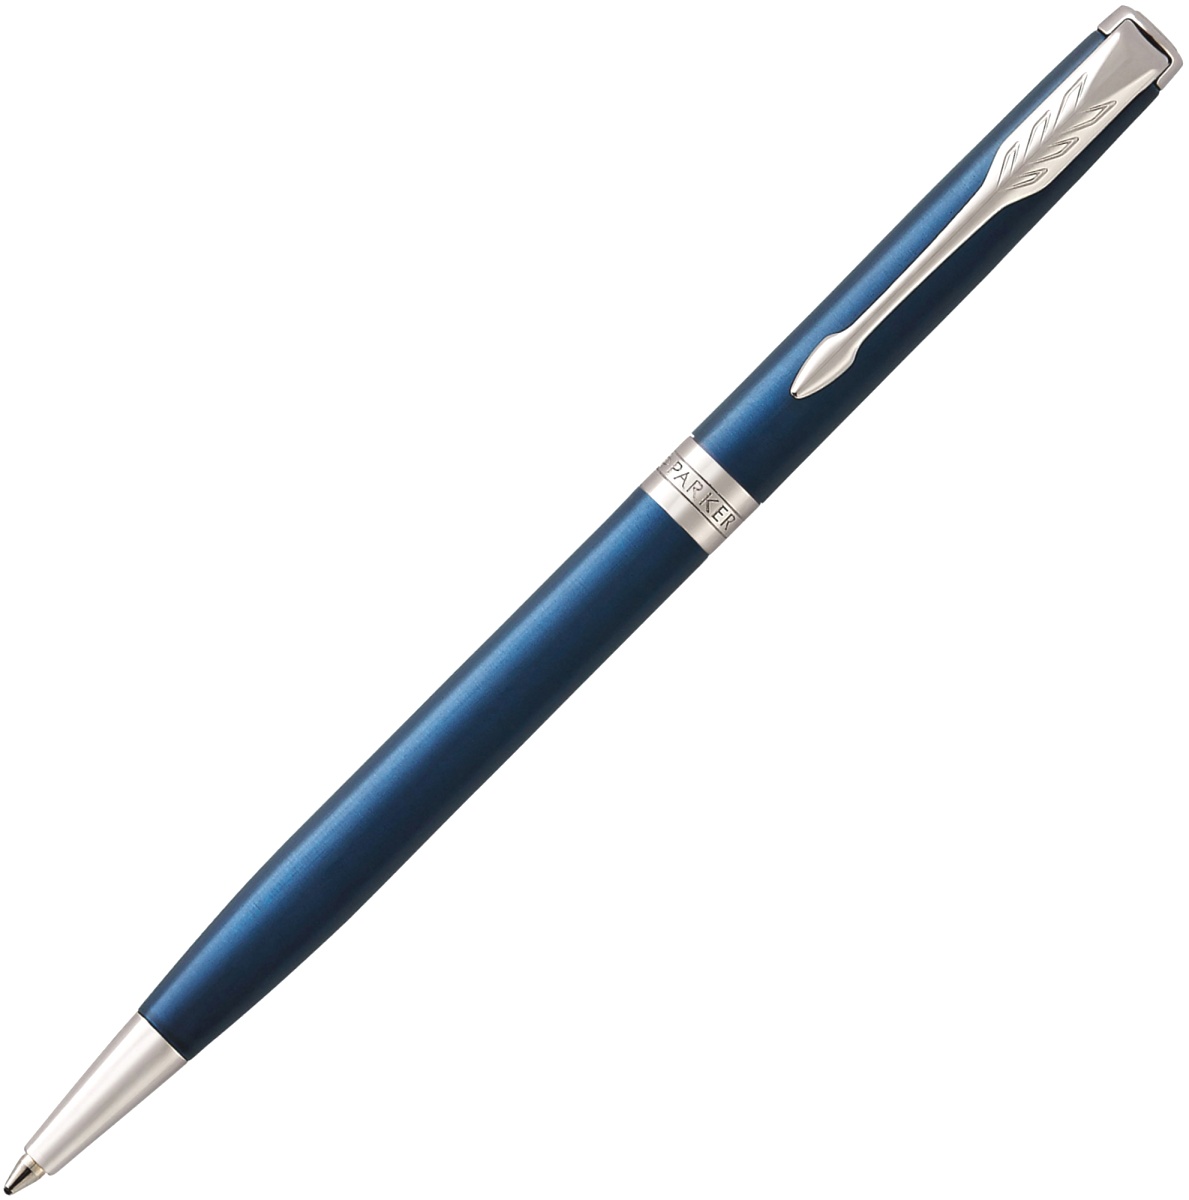  Шариковая ручка Parker Sonnet Slim Core K439, Subtle Blue Lacquer CT